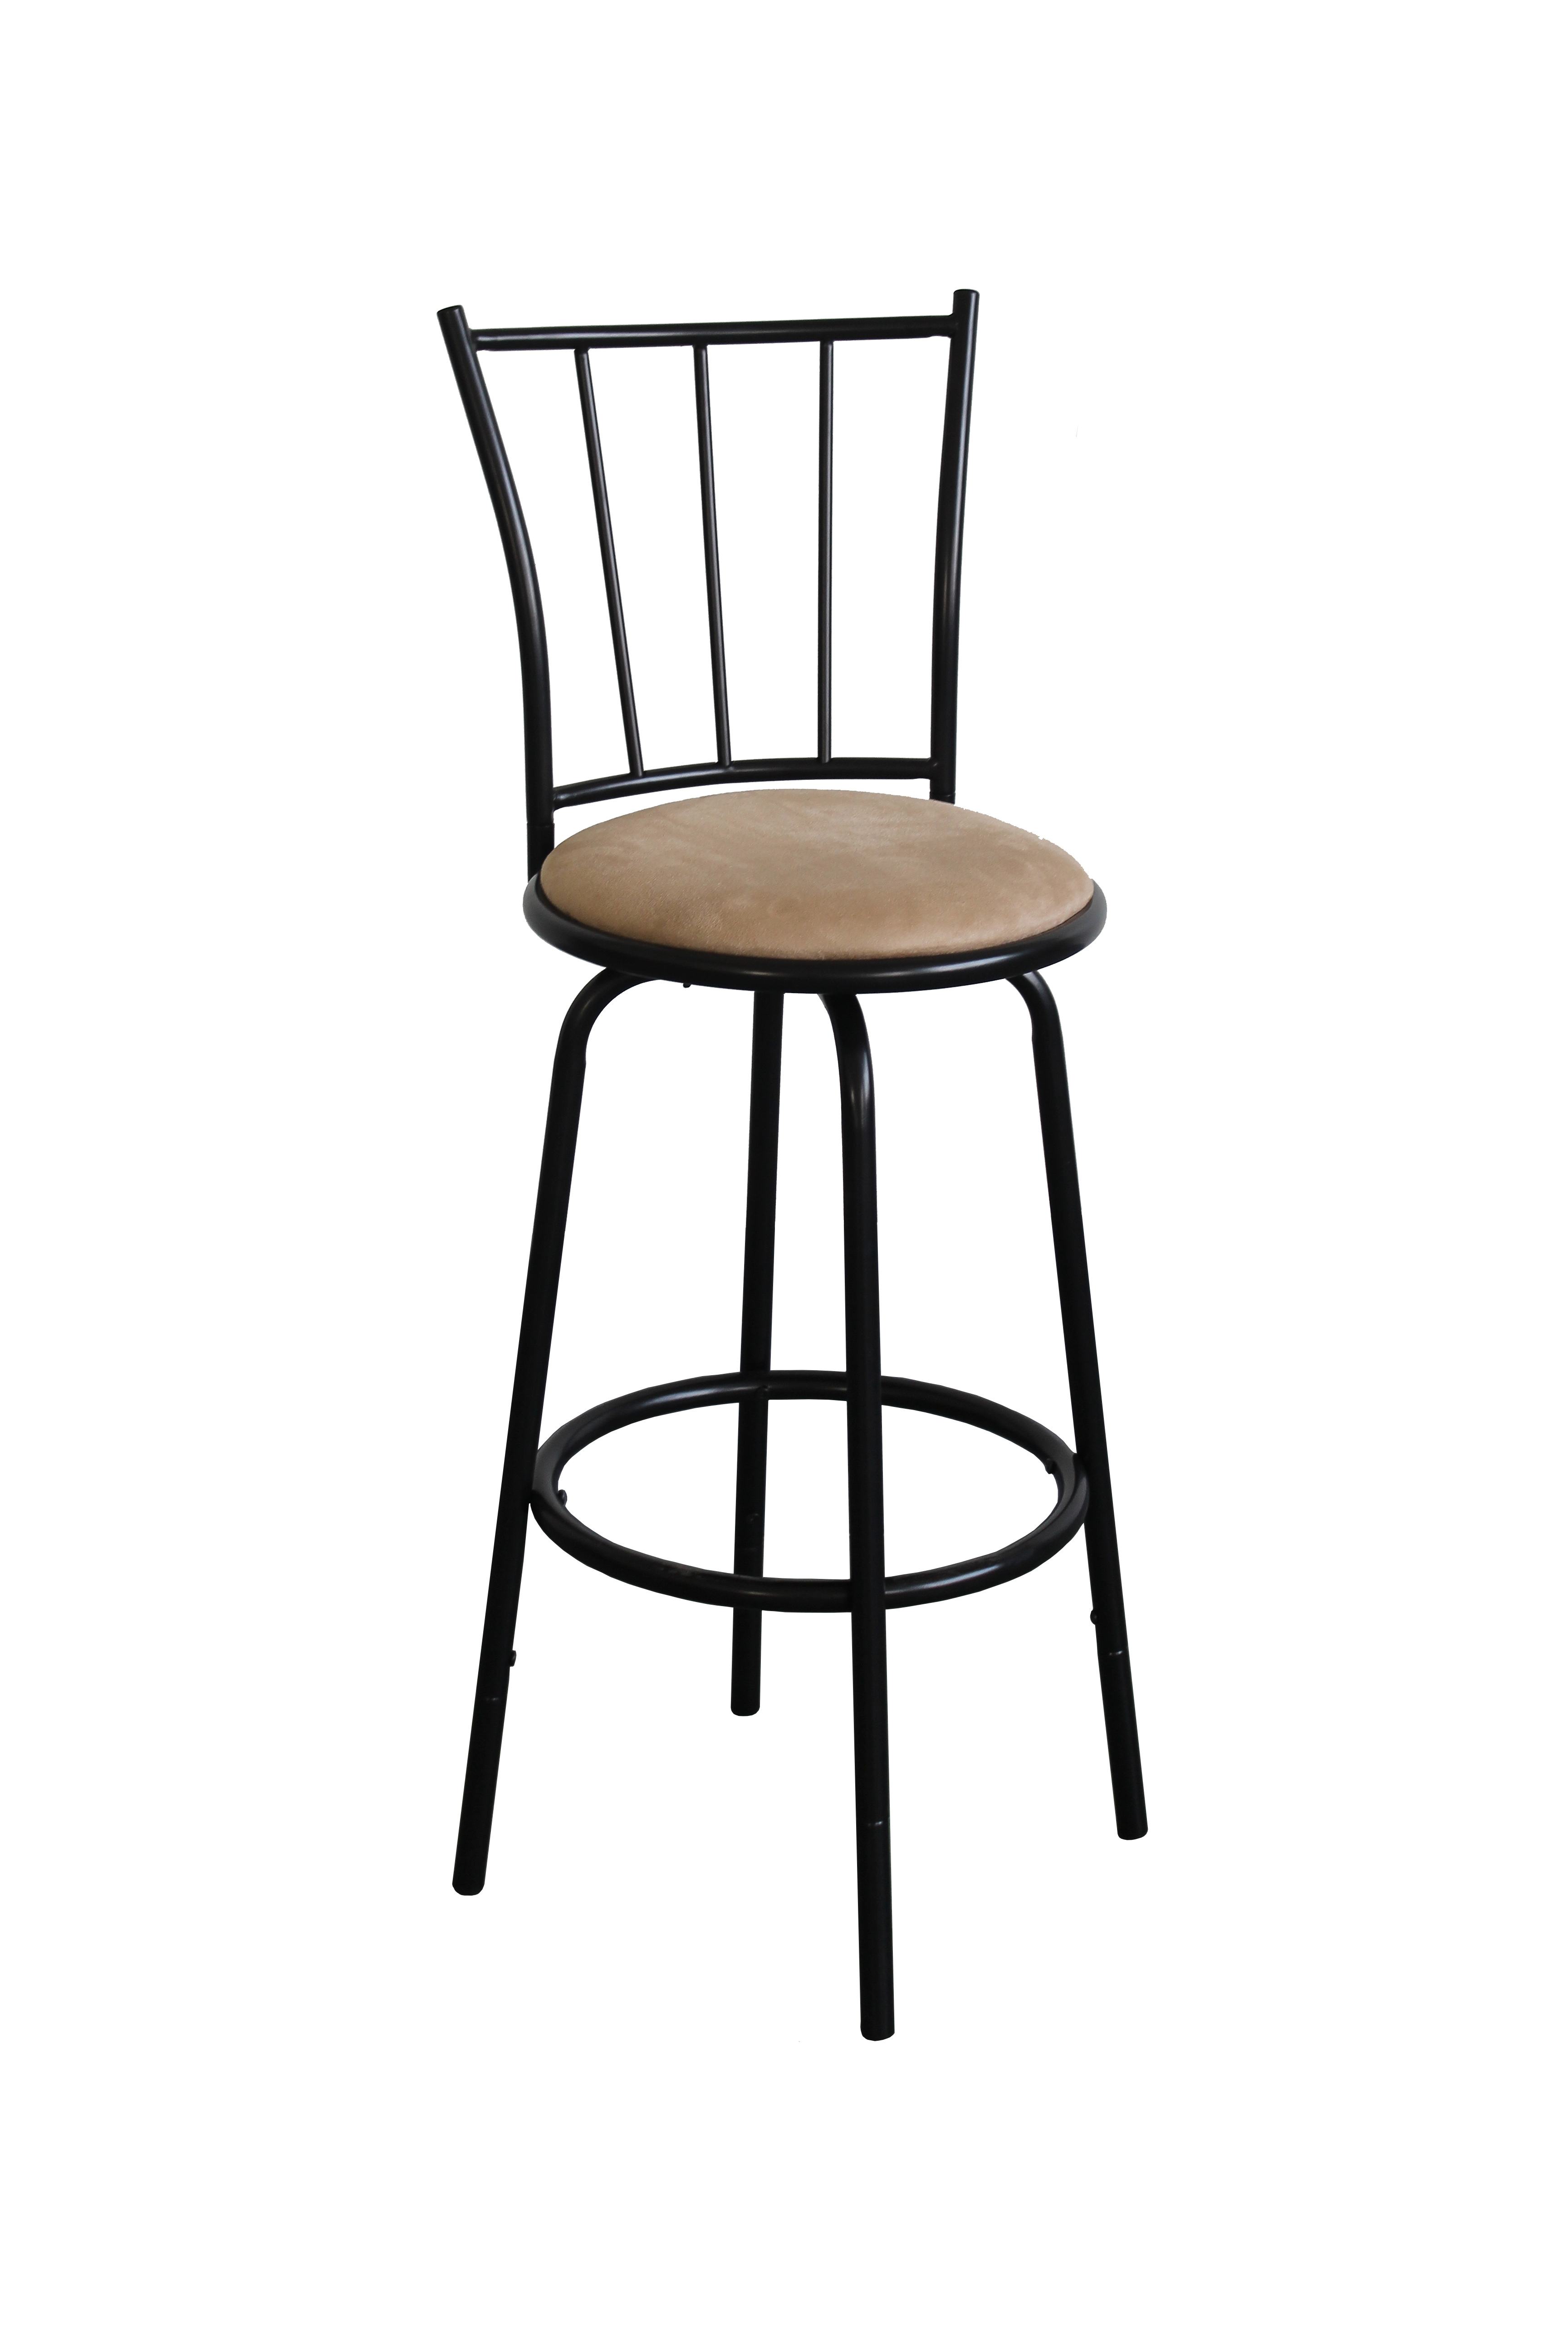 Barstool High Chair Bar Chair 6BC-002